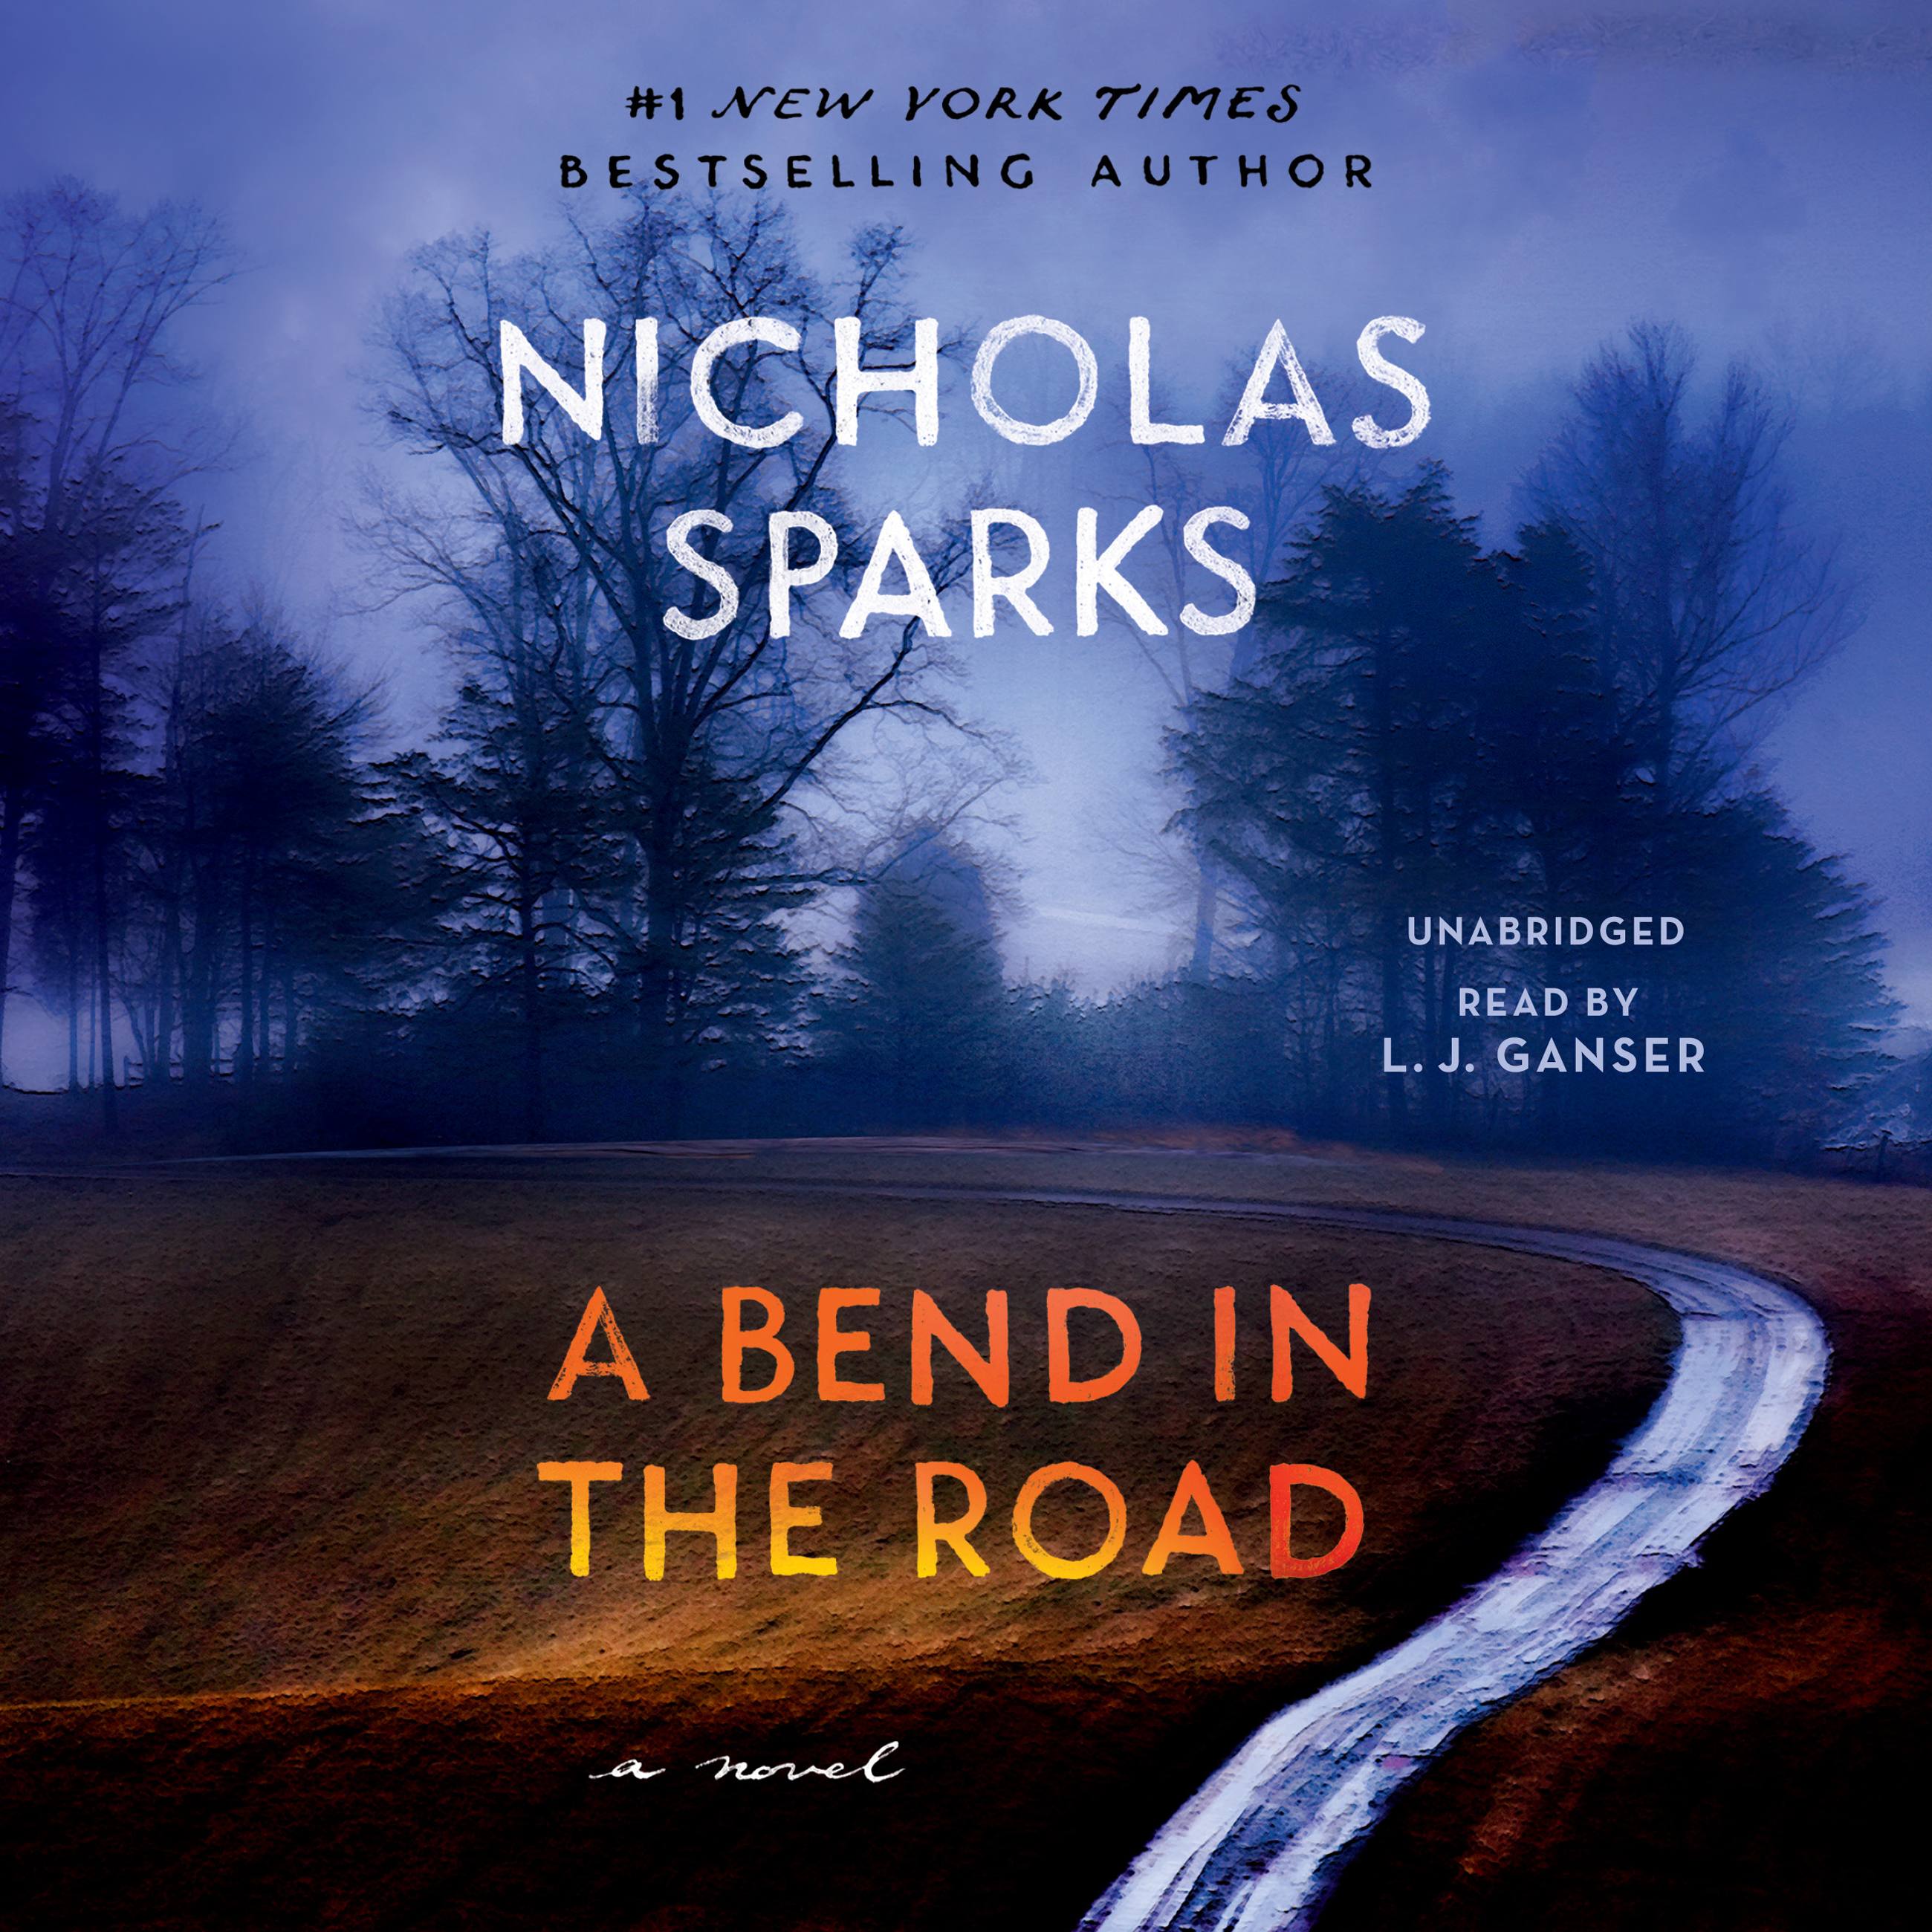 THE LONGEST RIDE (A FORMAT) : Sparks, Nicholas: : Books